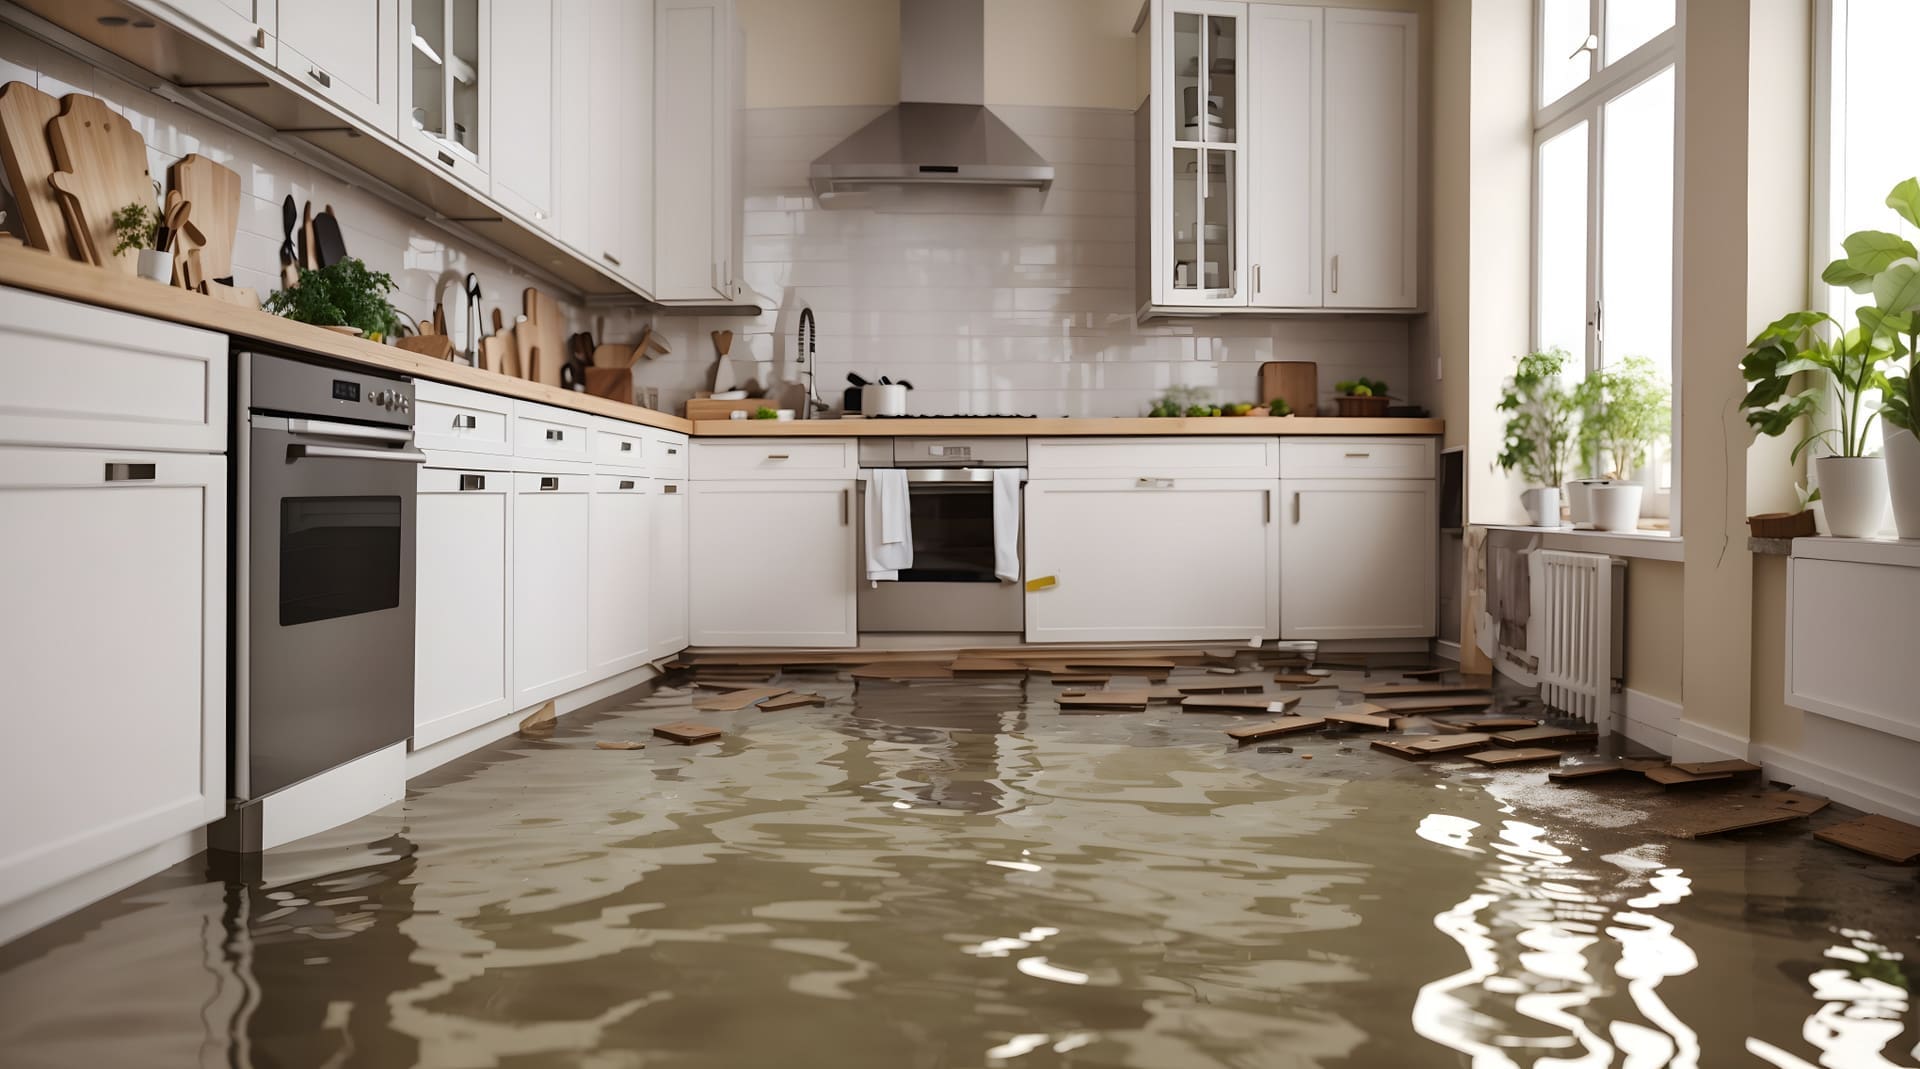 Rohrbruch / Wasserschaden in der Küche: Zahlt die Versicherung alles? (© happy Wu / stock.adobe.com)